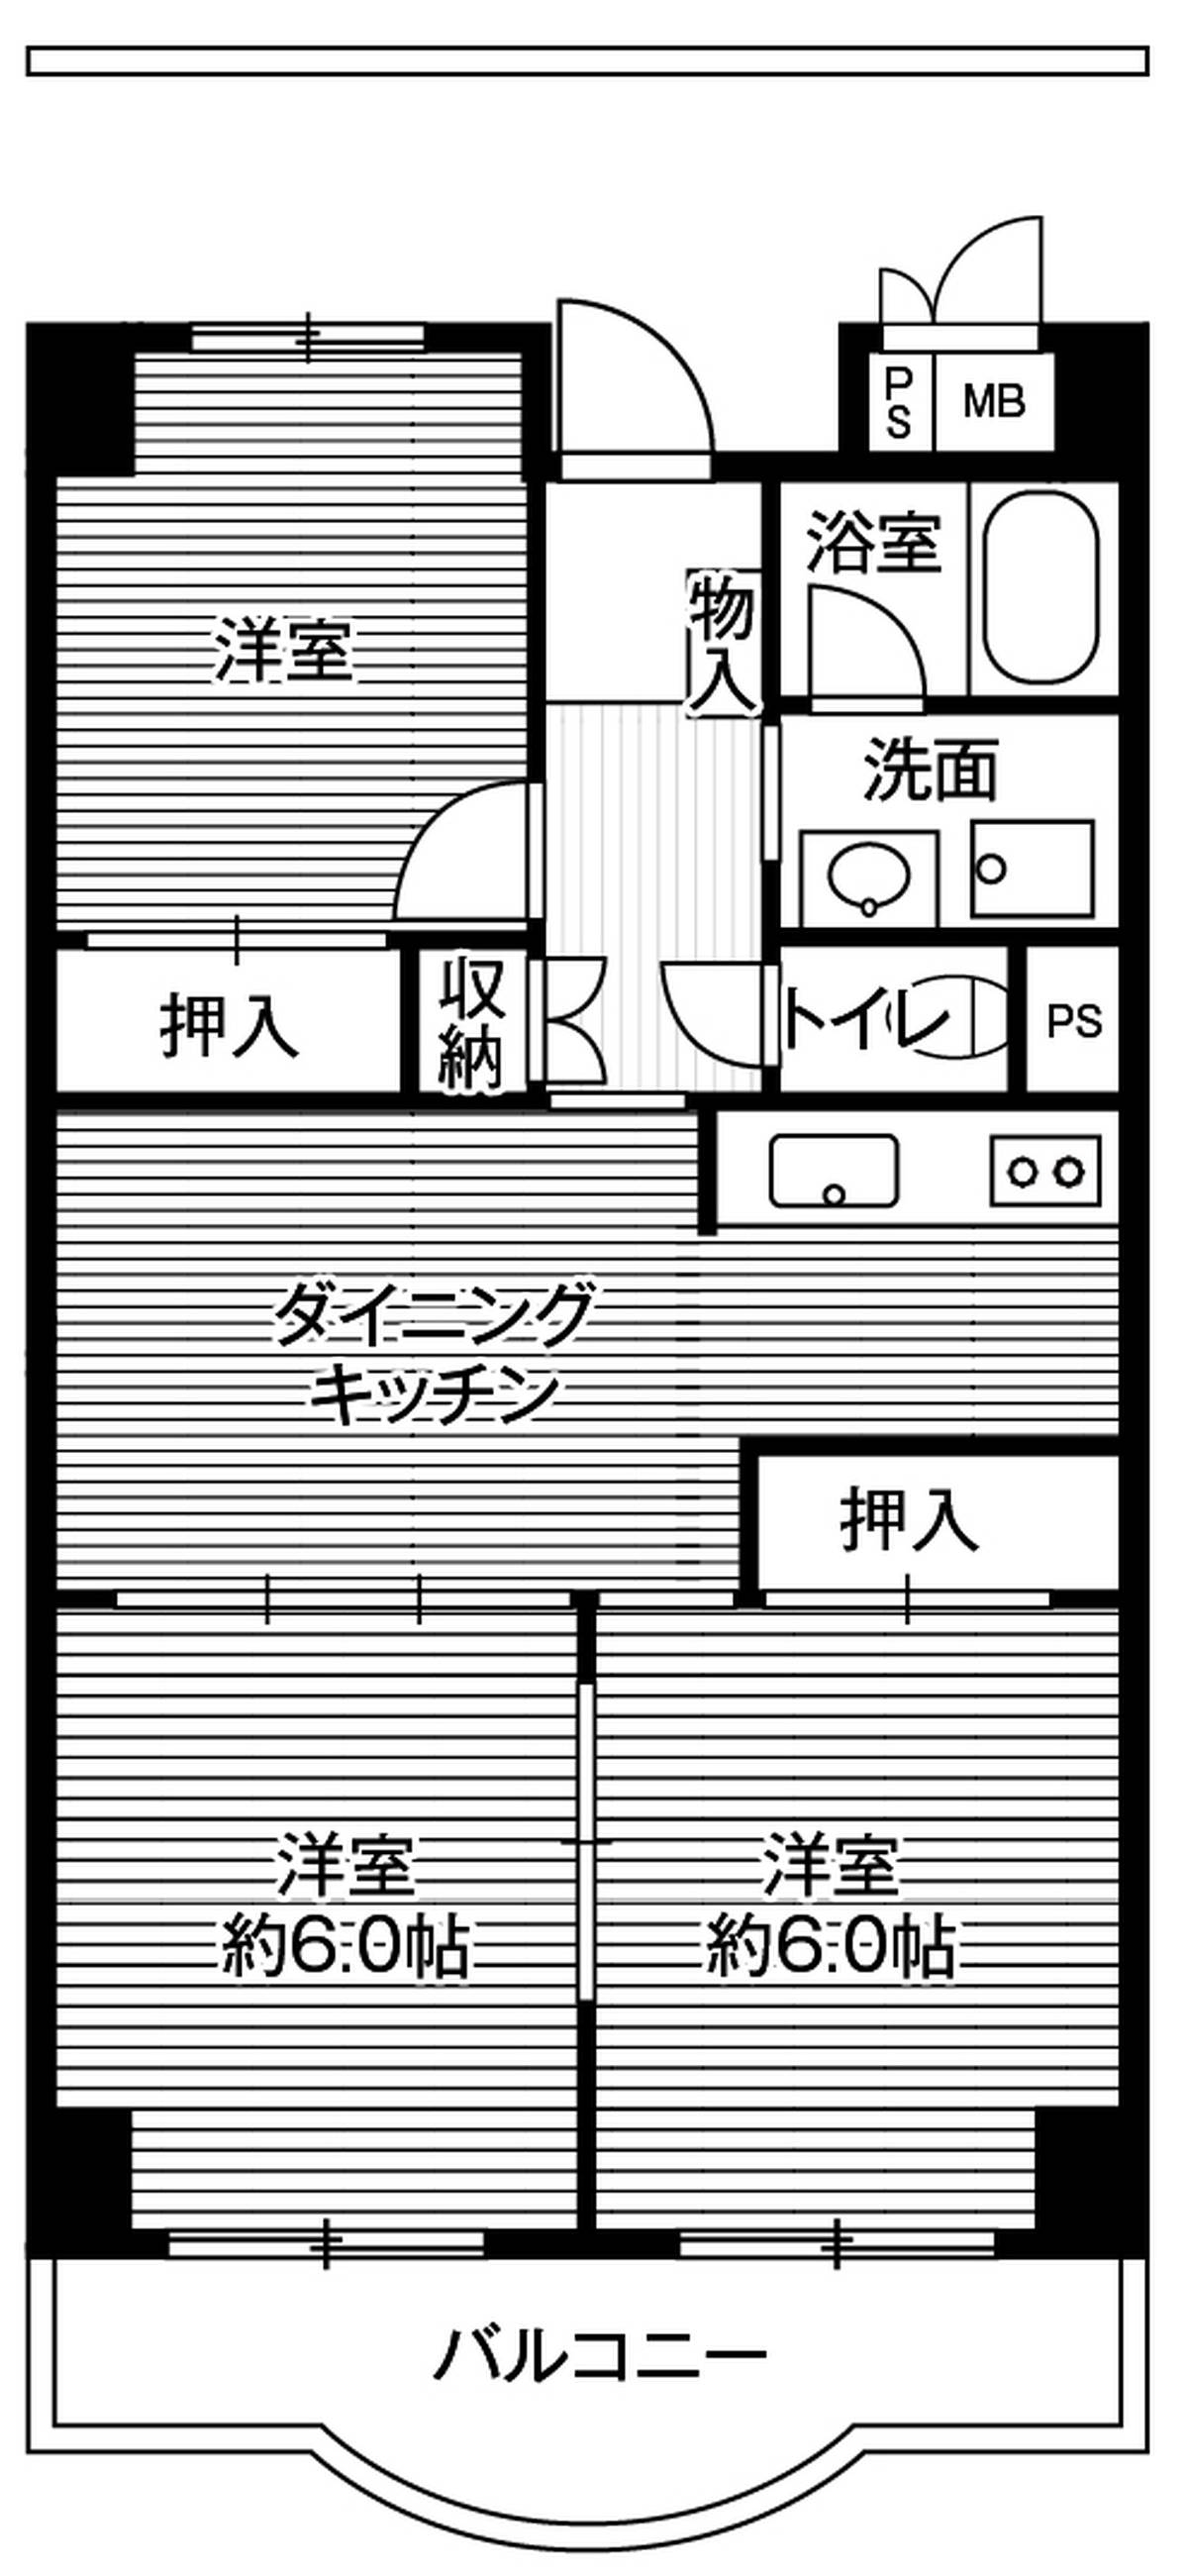 3DK floorplan of Village House Shibaura Tower in Minato-ku